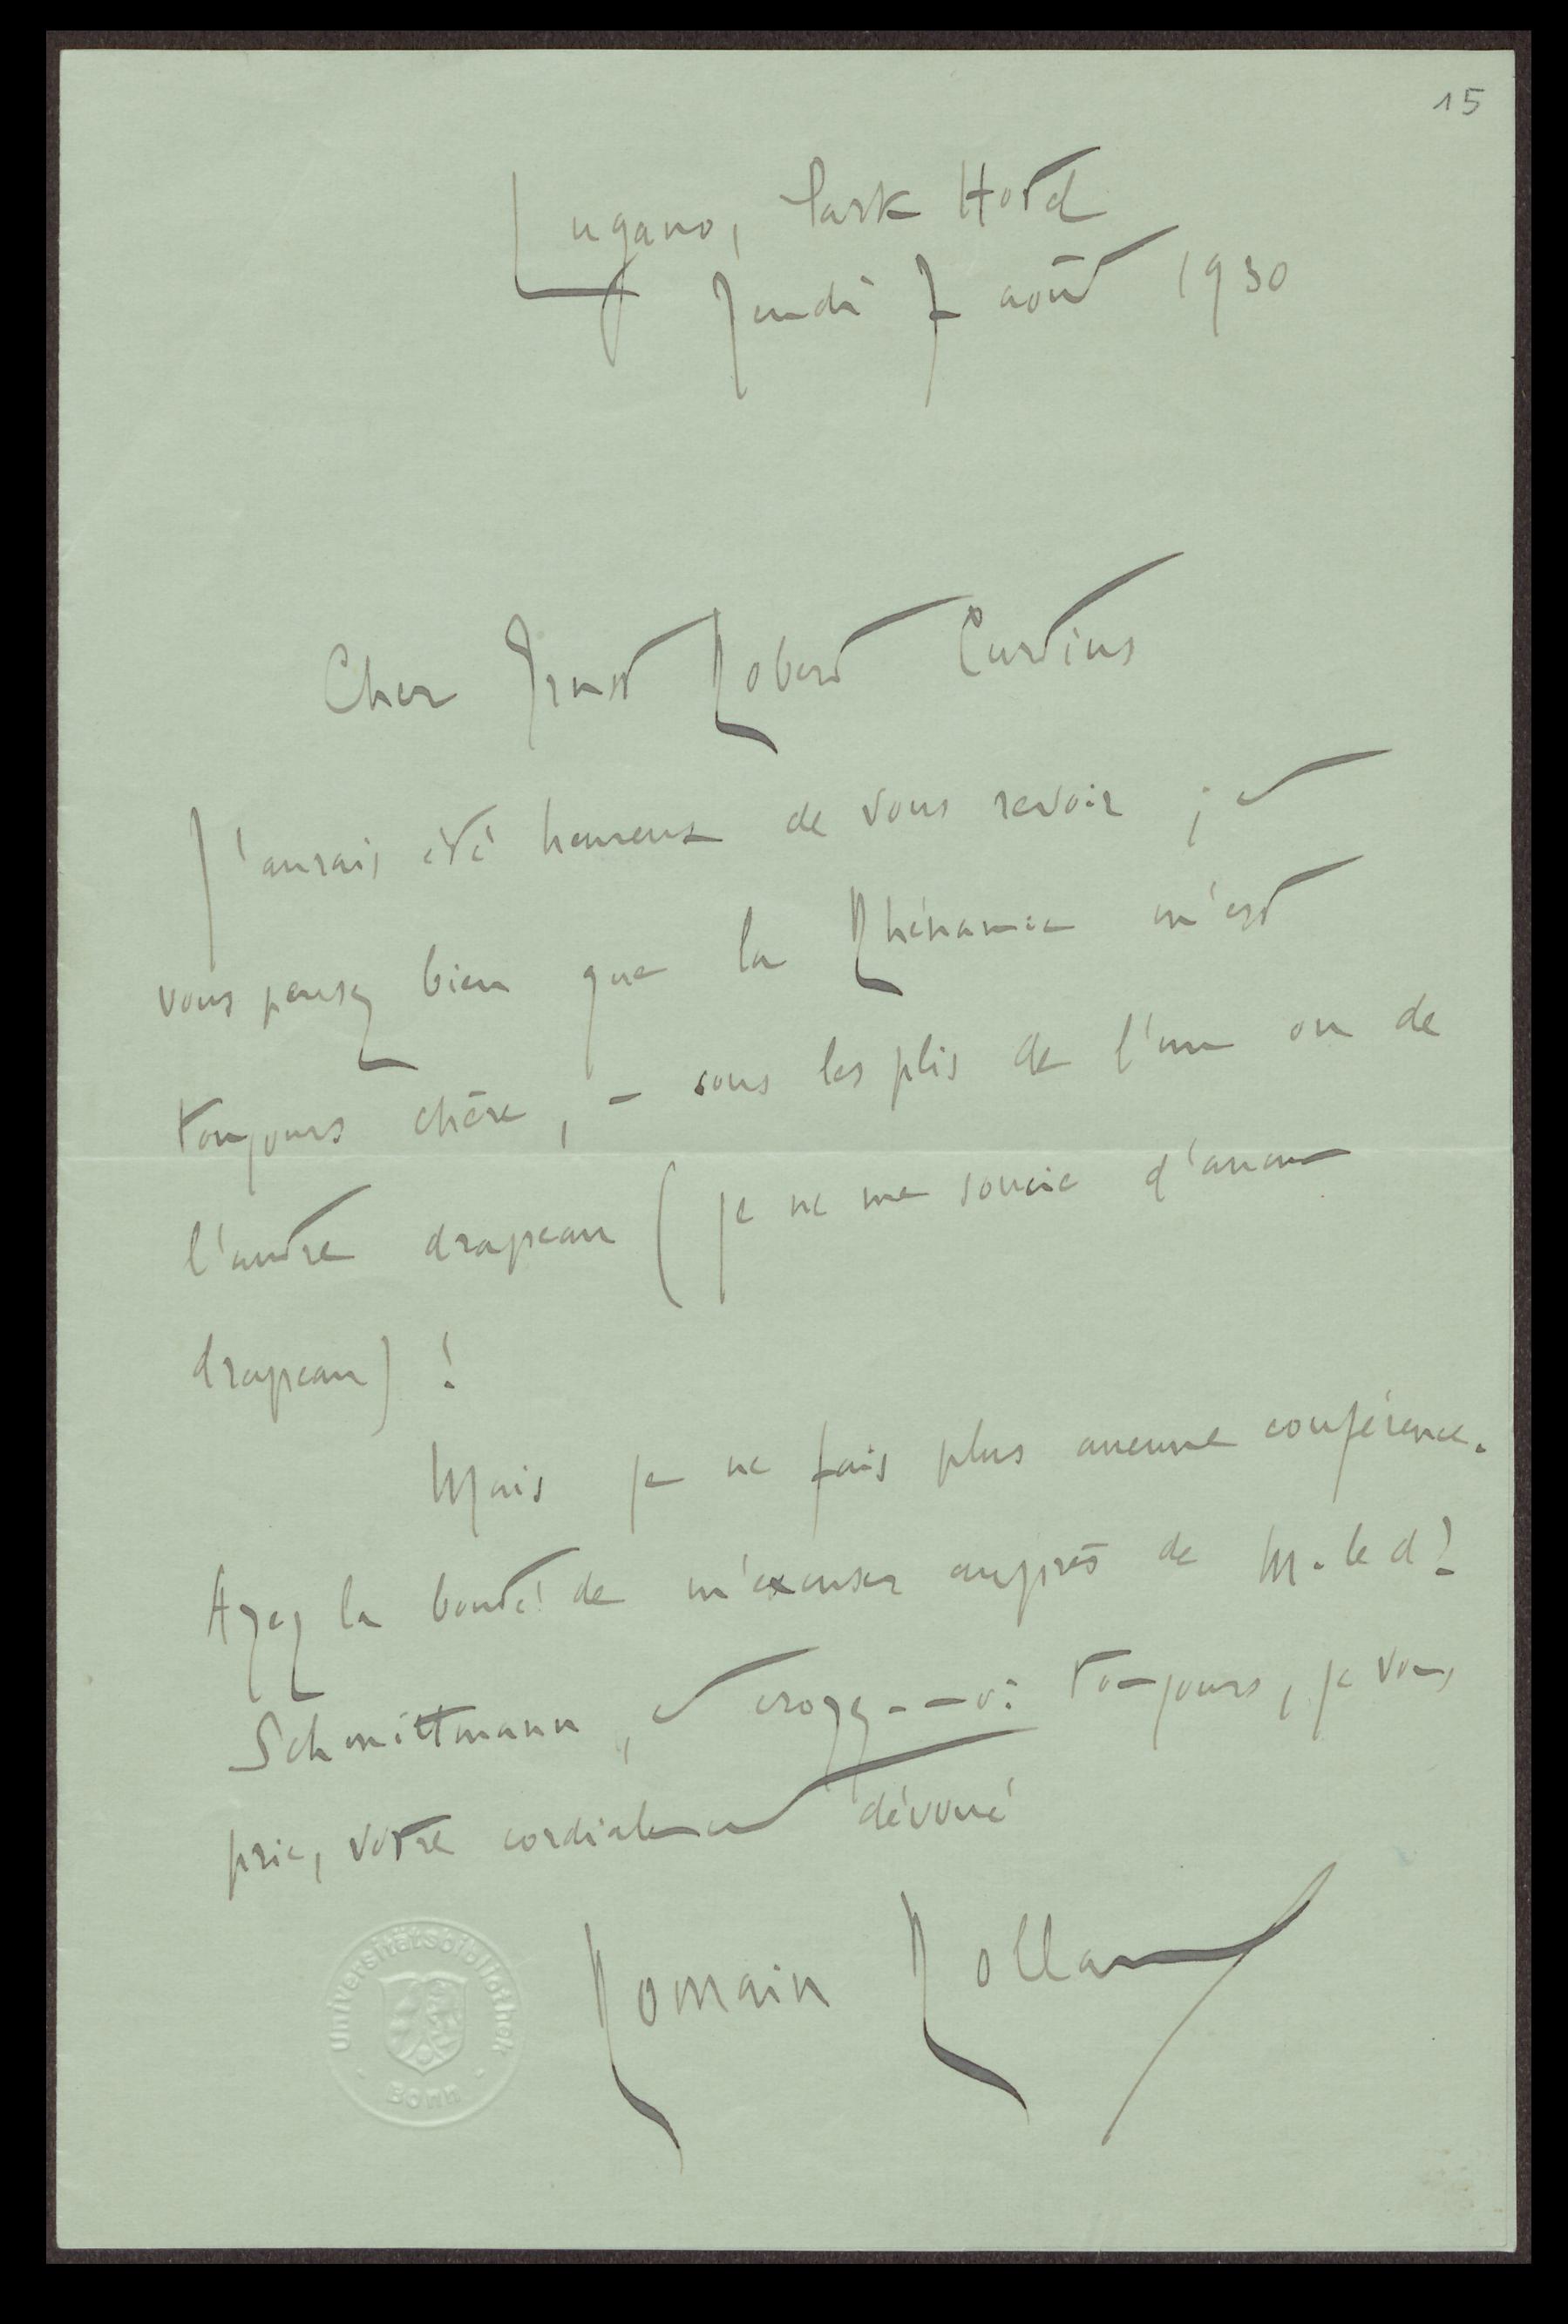 Brief von Romain Rolland an Ernst Robert Curtius (7.8.1930)